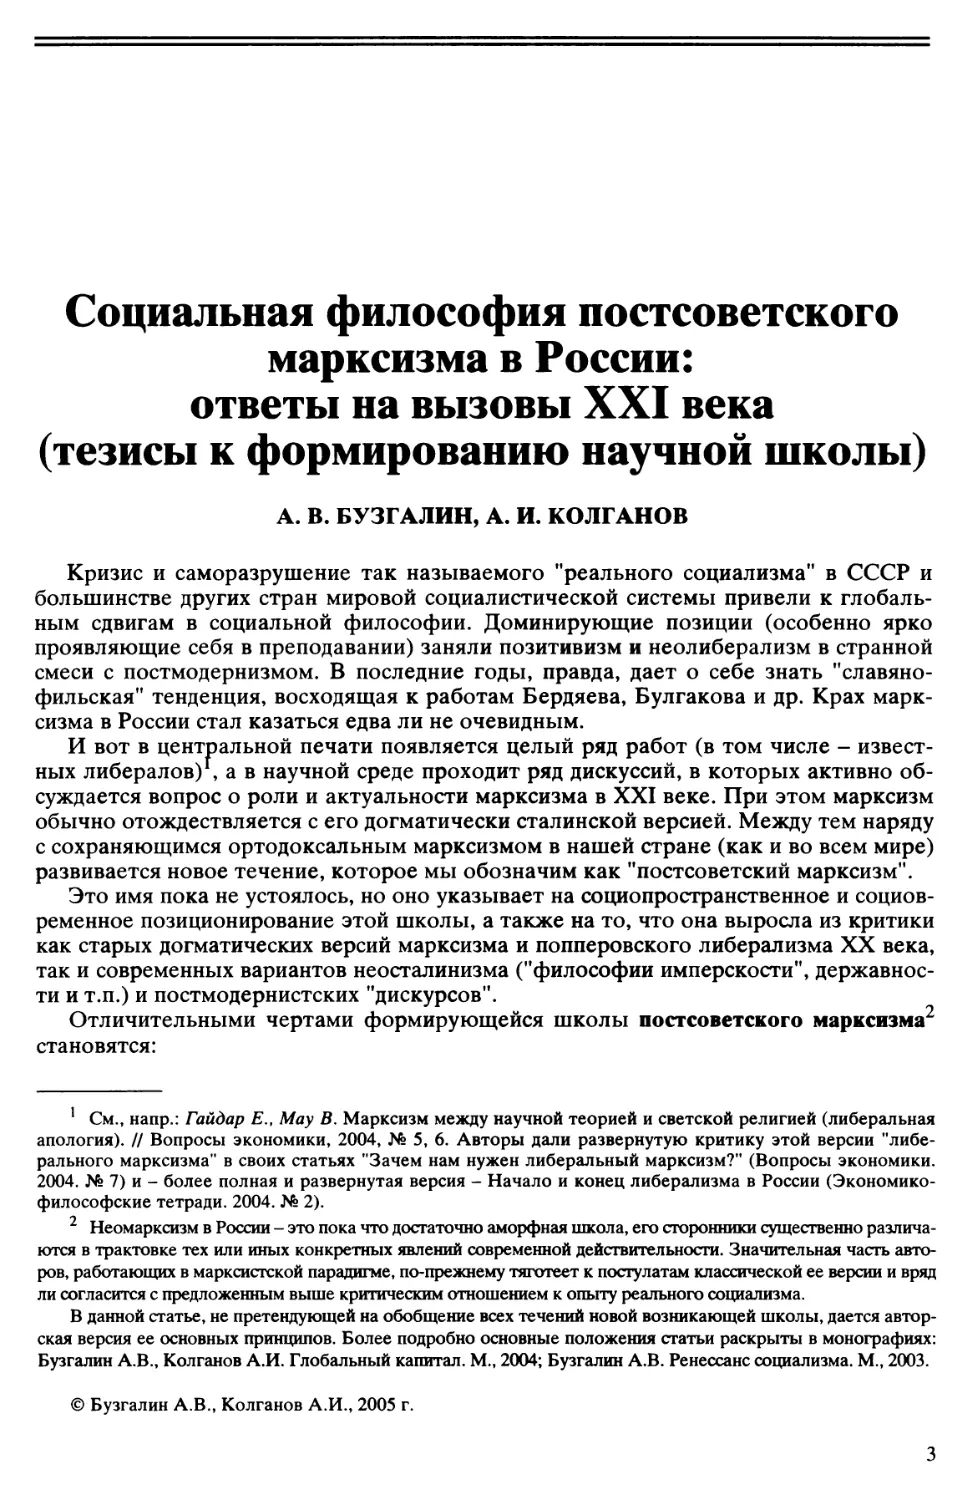 A.B. Бузгалин, А.И. Колганов - Социальная философия постсоветского марксизма в России: ответы на вызовы XXI века